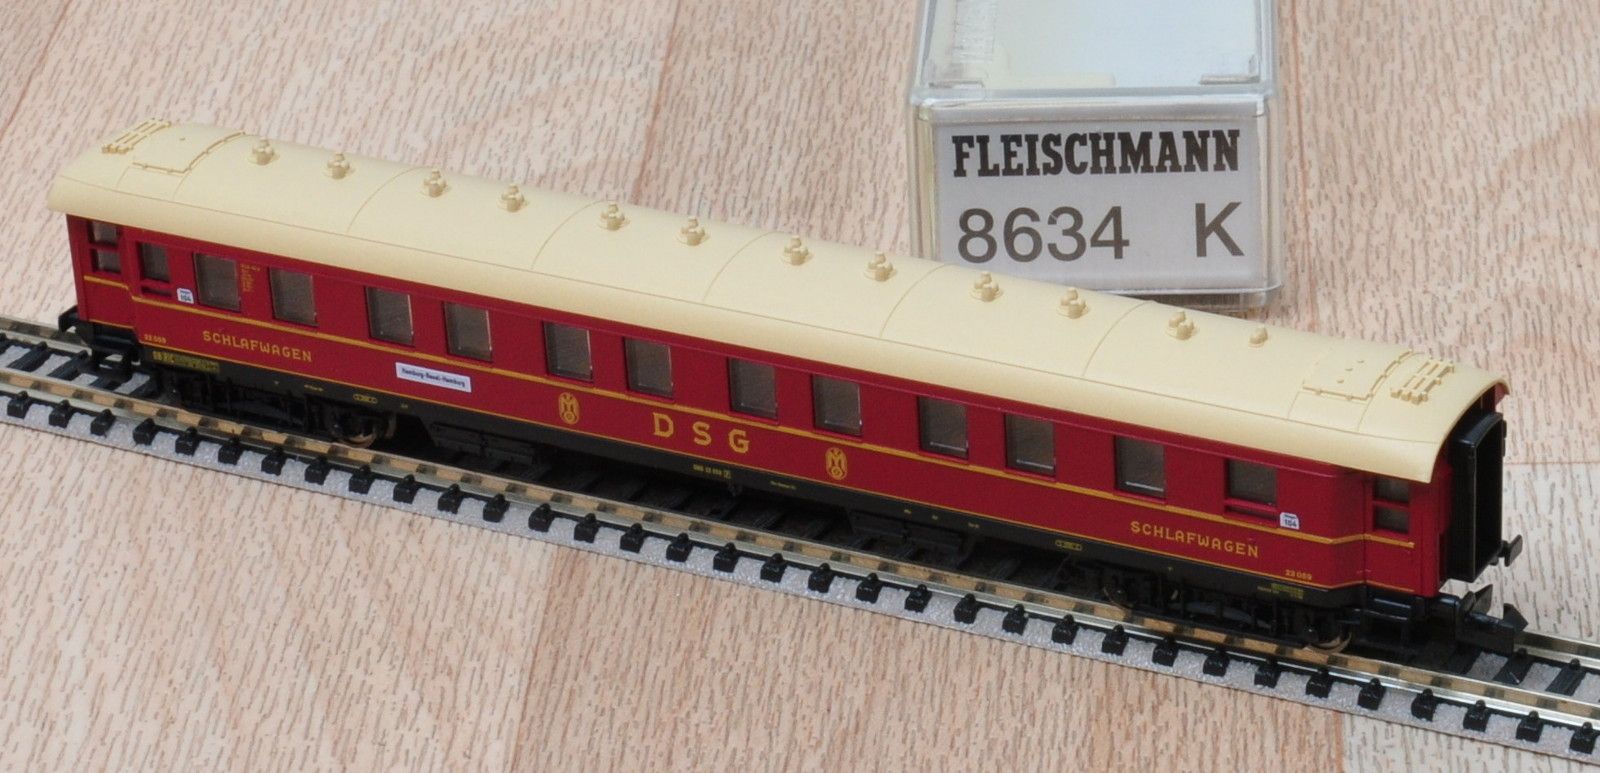 Fleischmann 8634 K Schnellzug Schlafwagen DSG der DRG / unbespielt